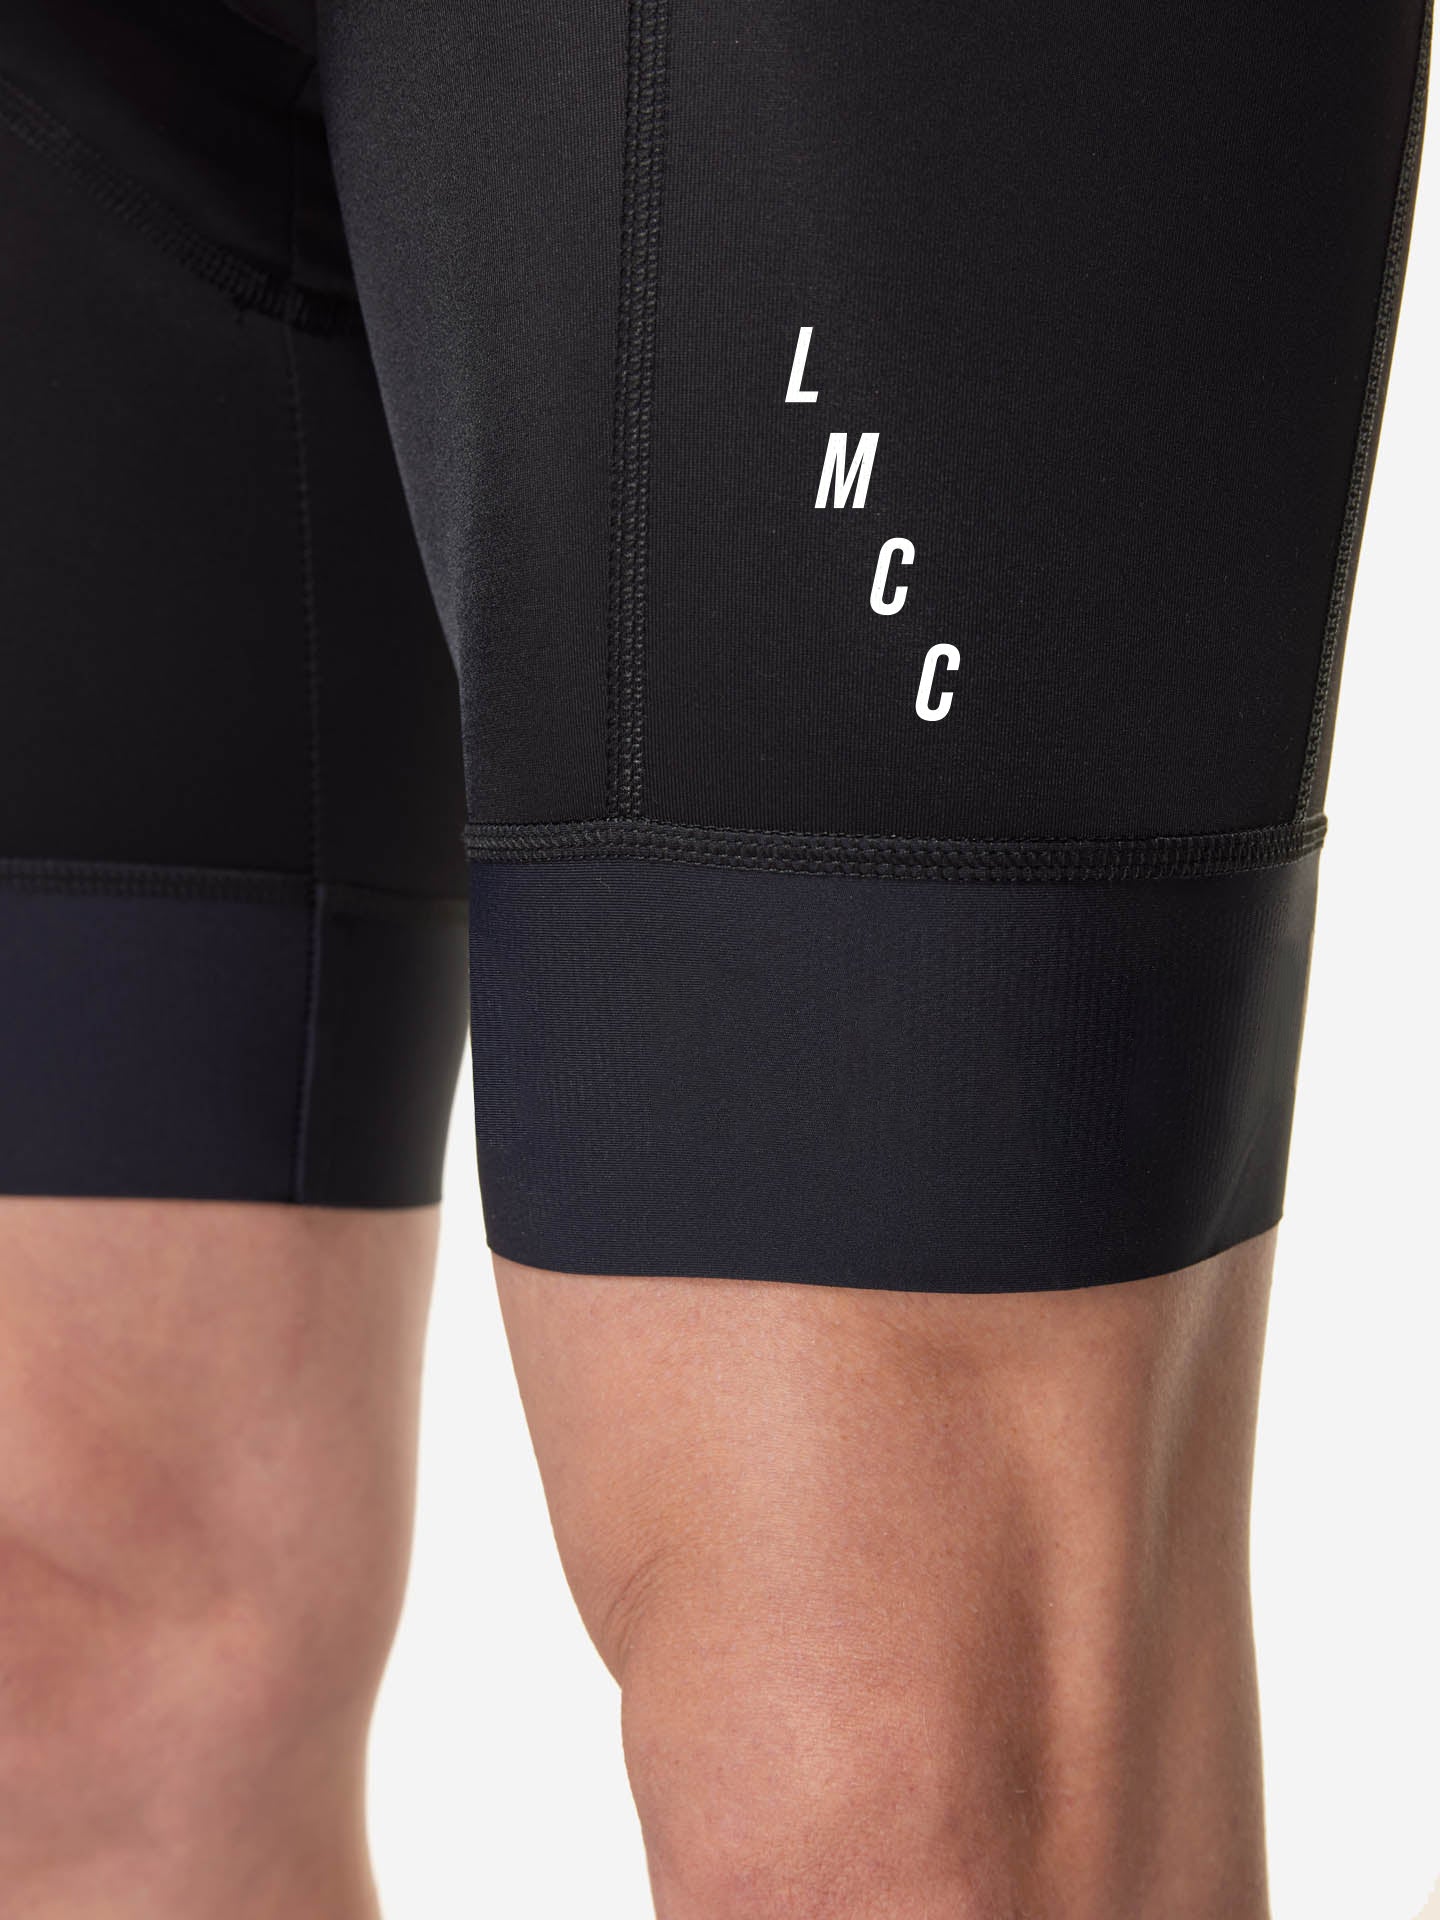 LMCC - Performance Bib Shorts -  La Machine Cycle Club.